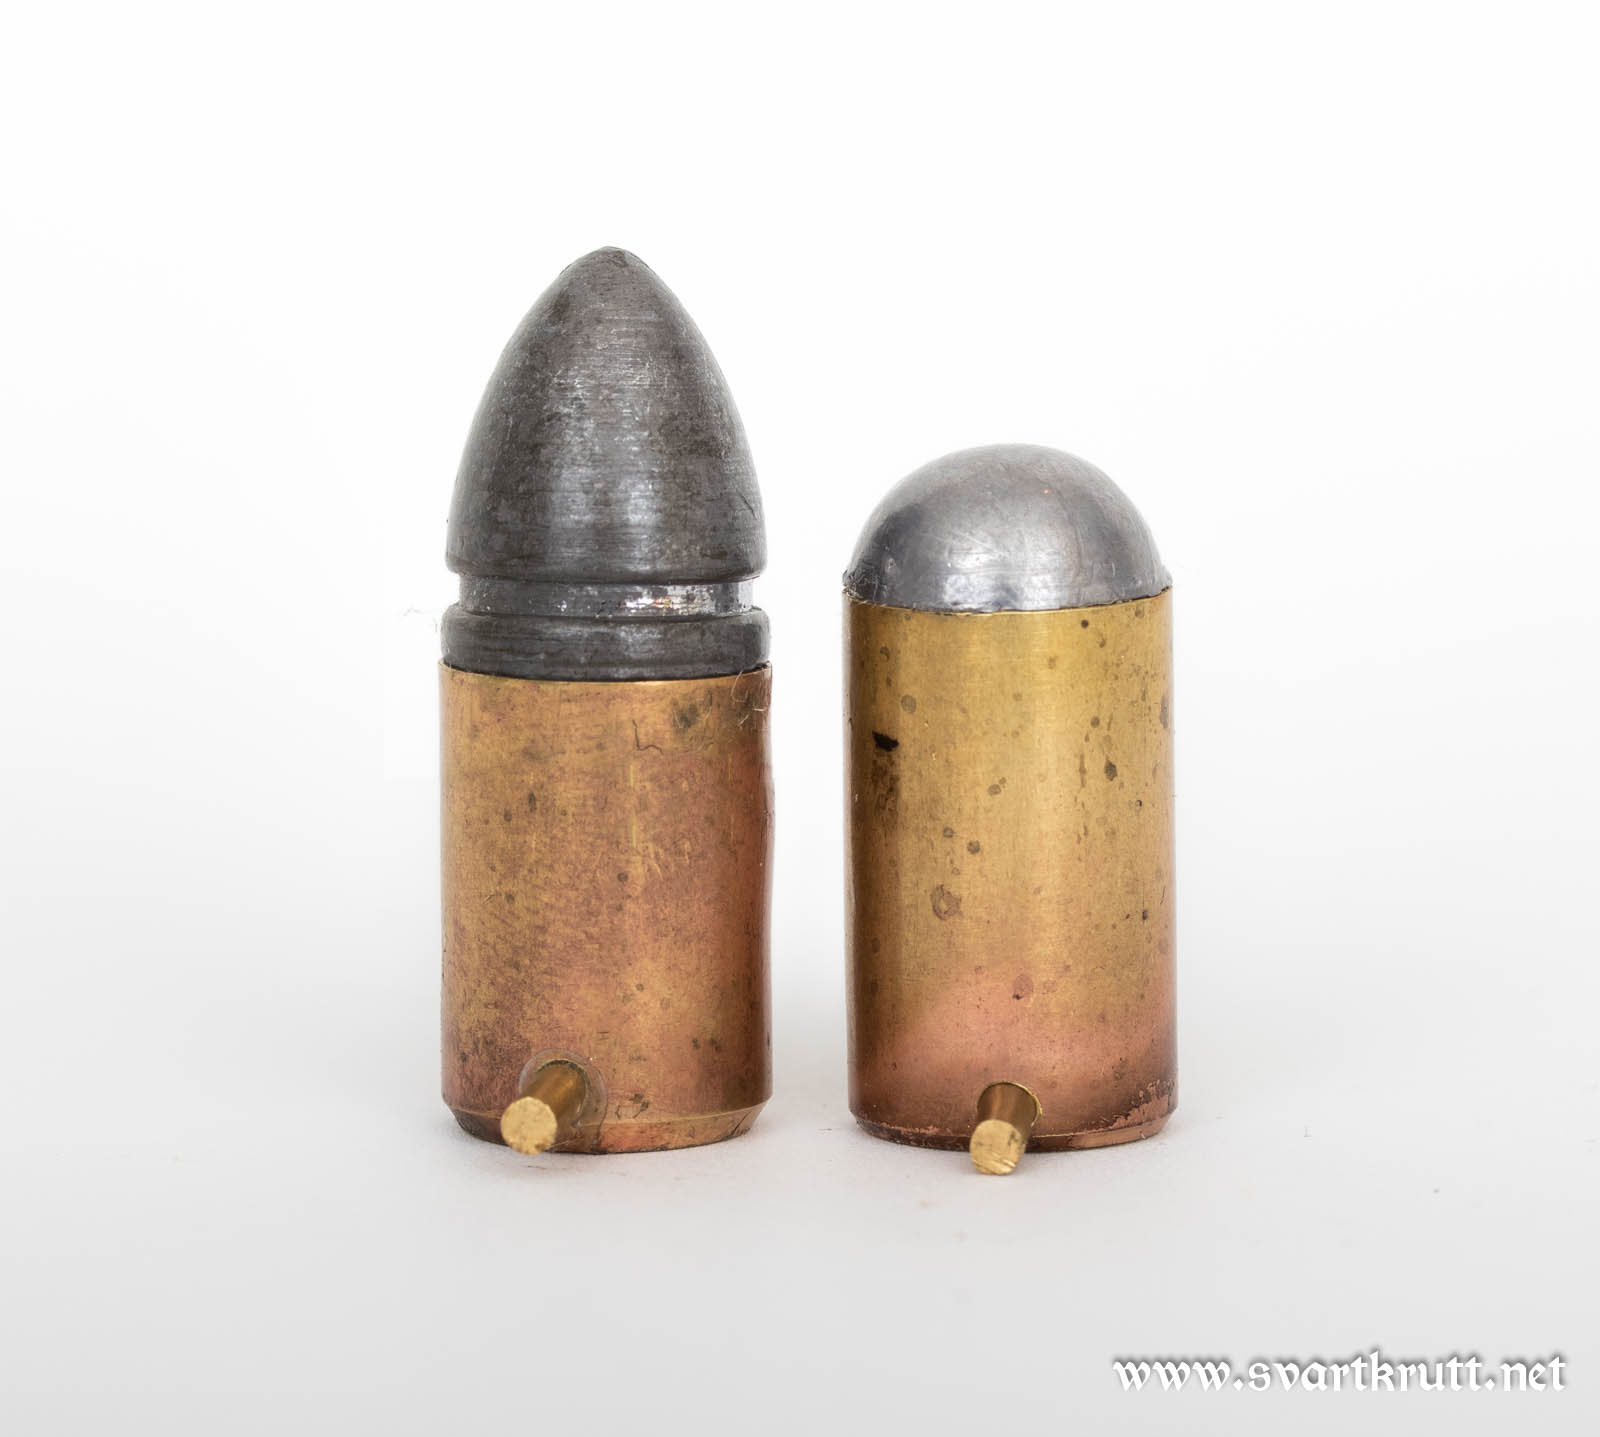 11mm pinfire cartridges.